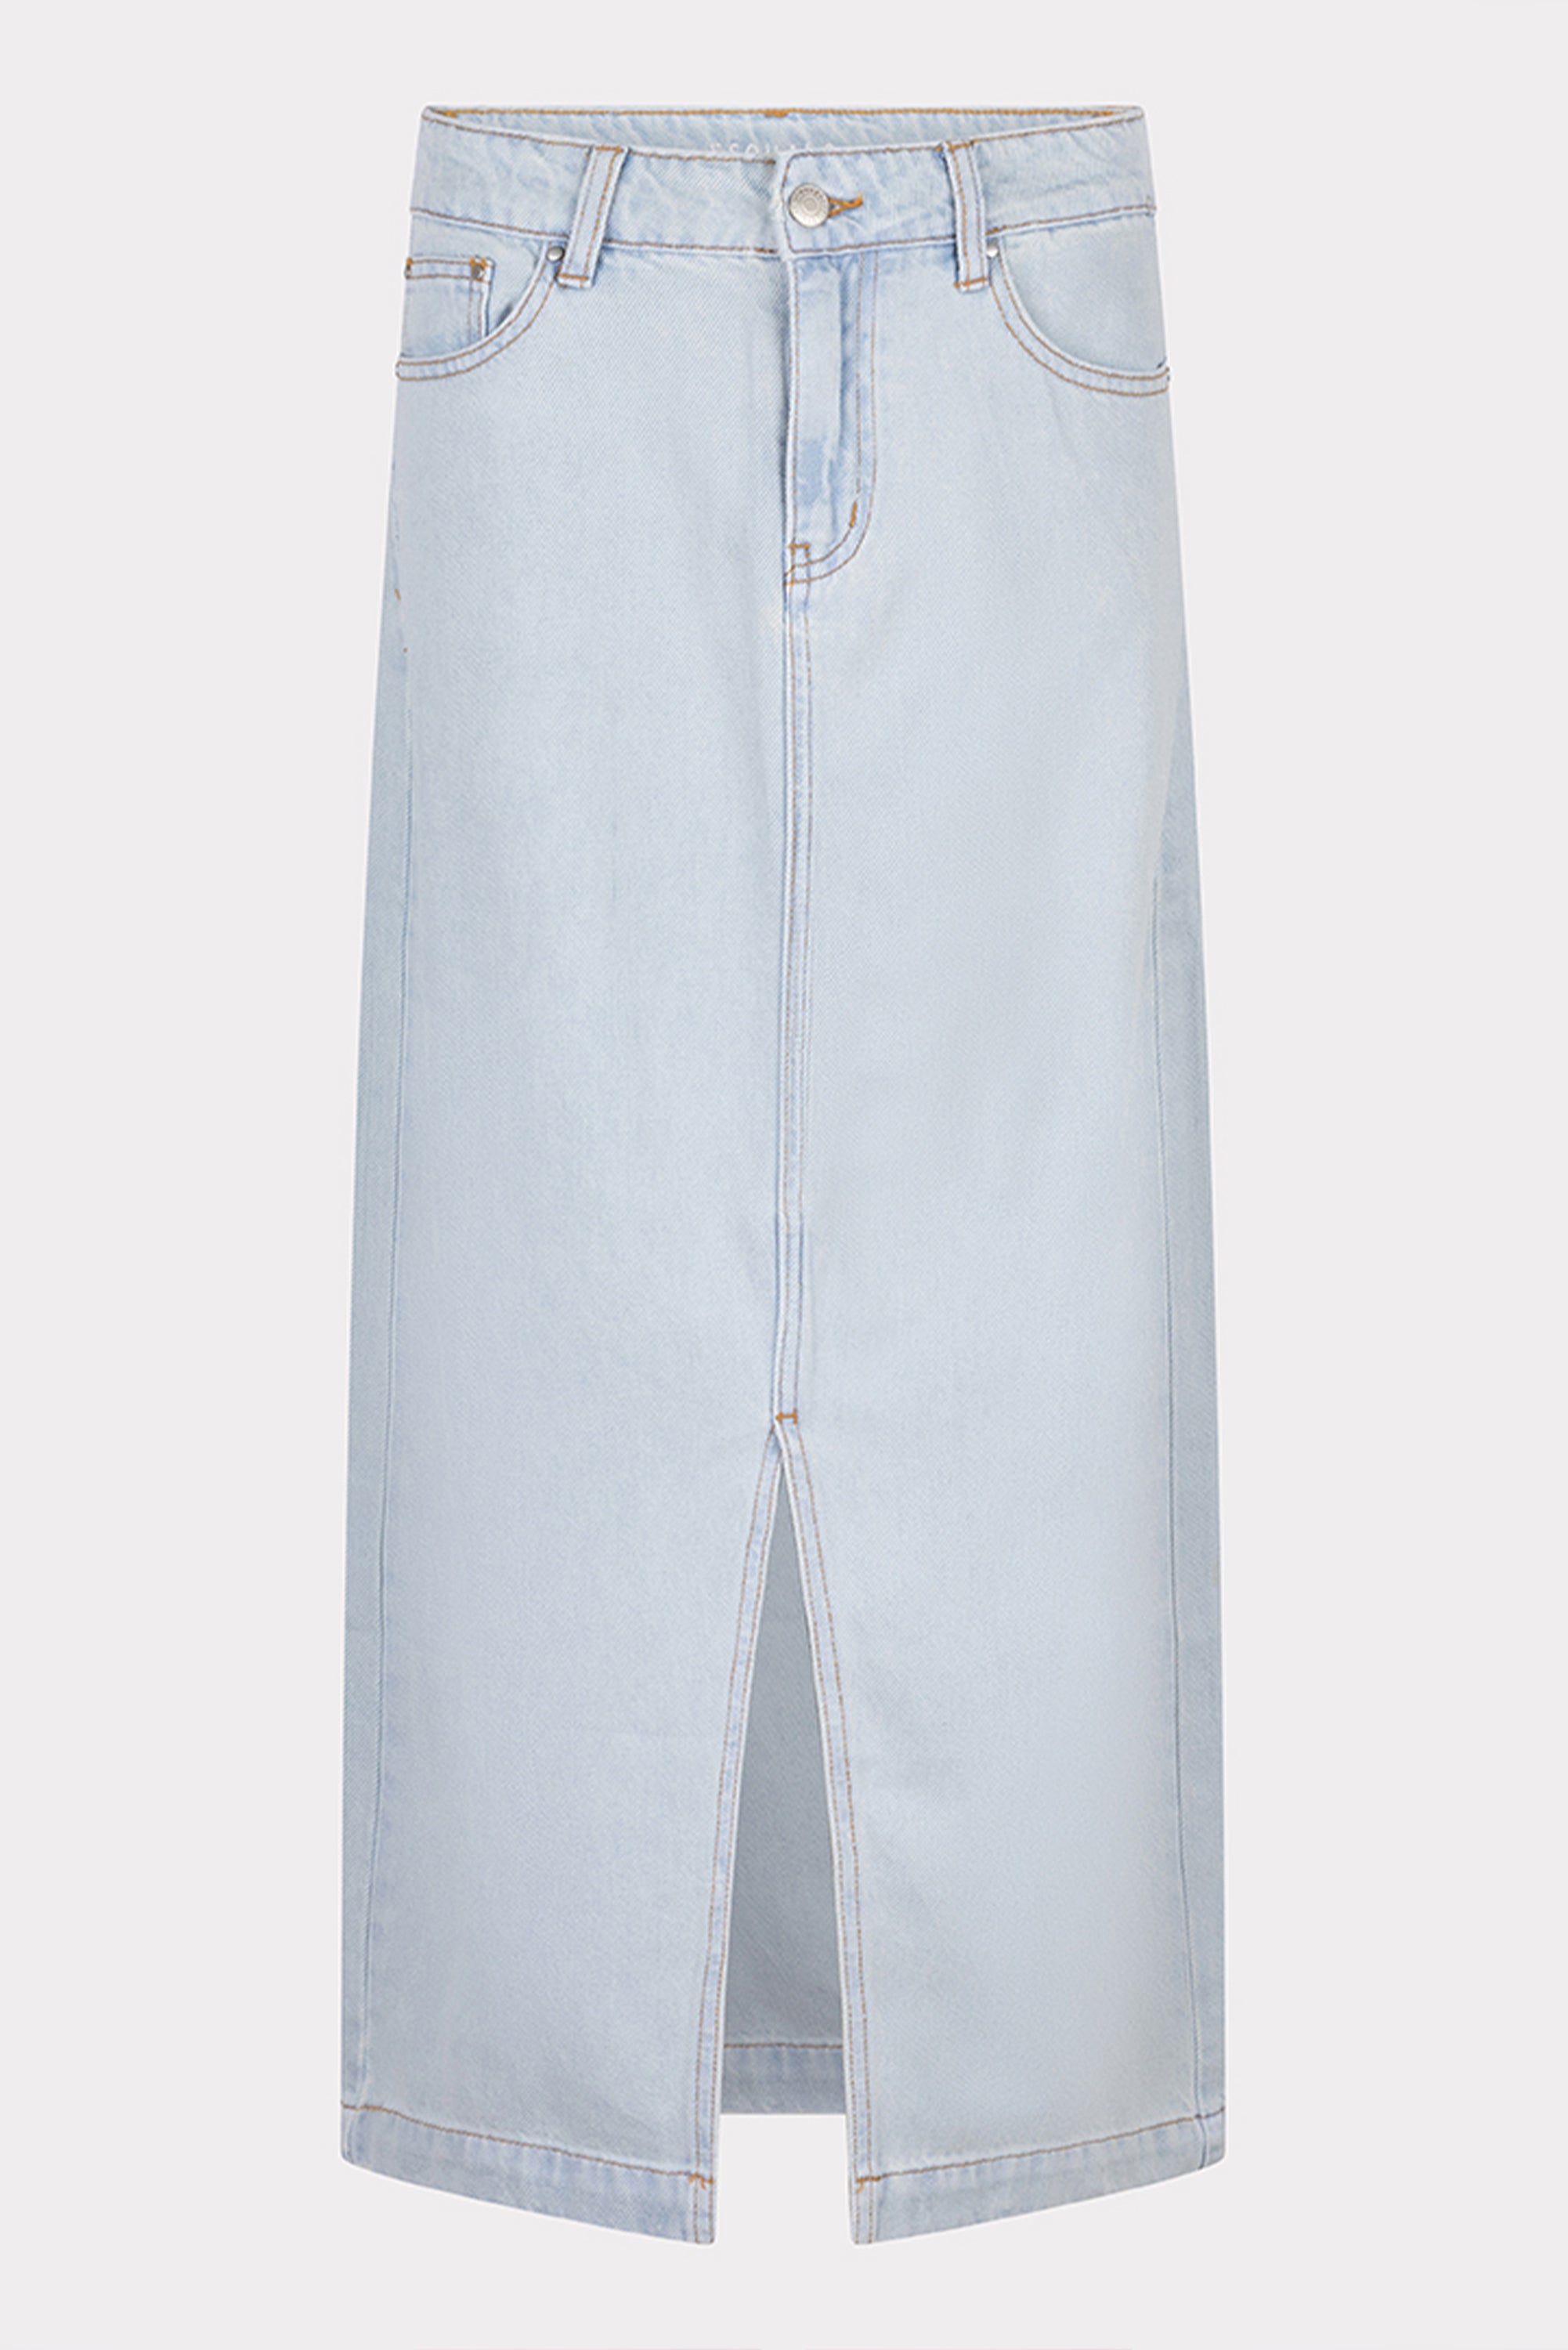 Esqualo (HS2412210 Women's 5-Pocket Denim Midi Skirt in Light Blue Wash